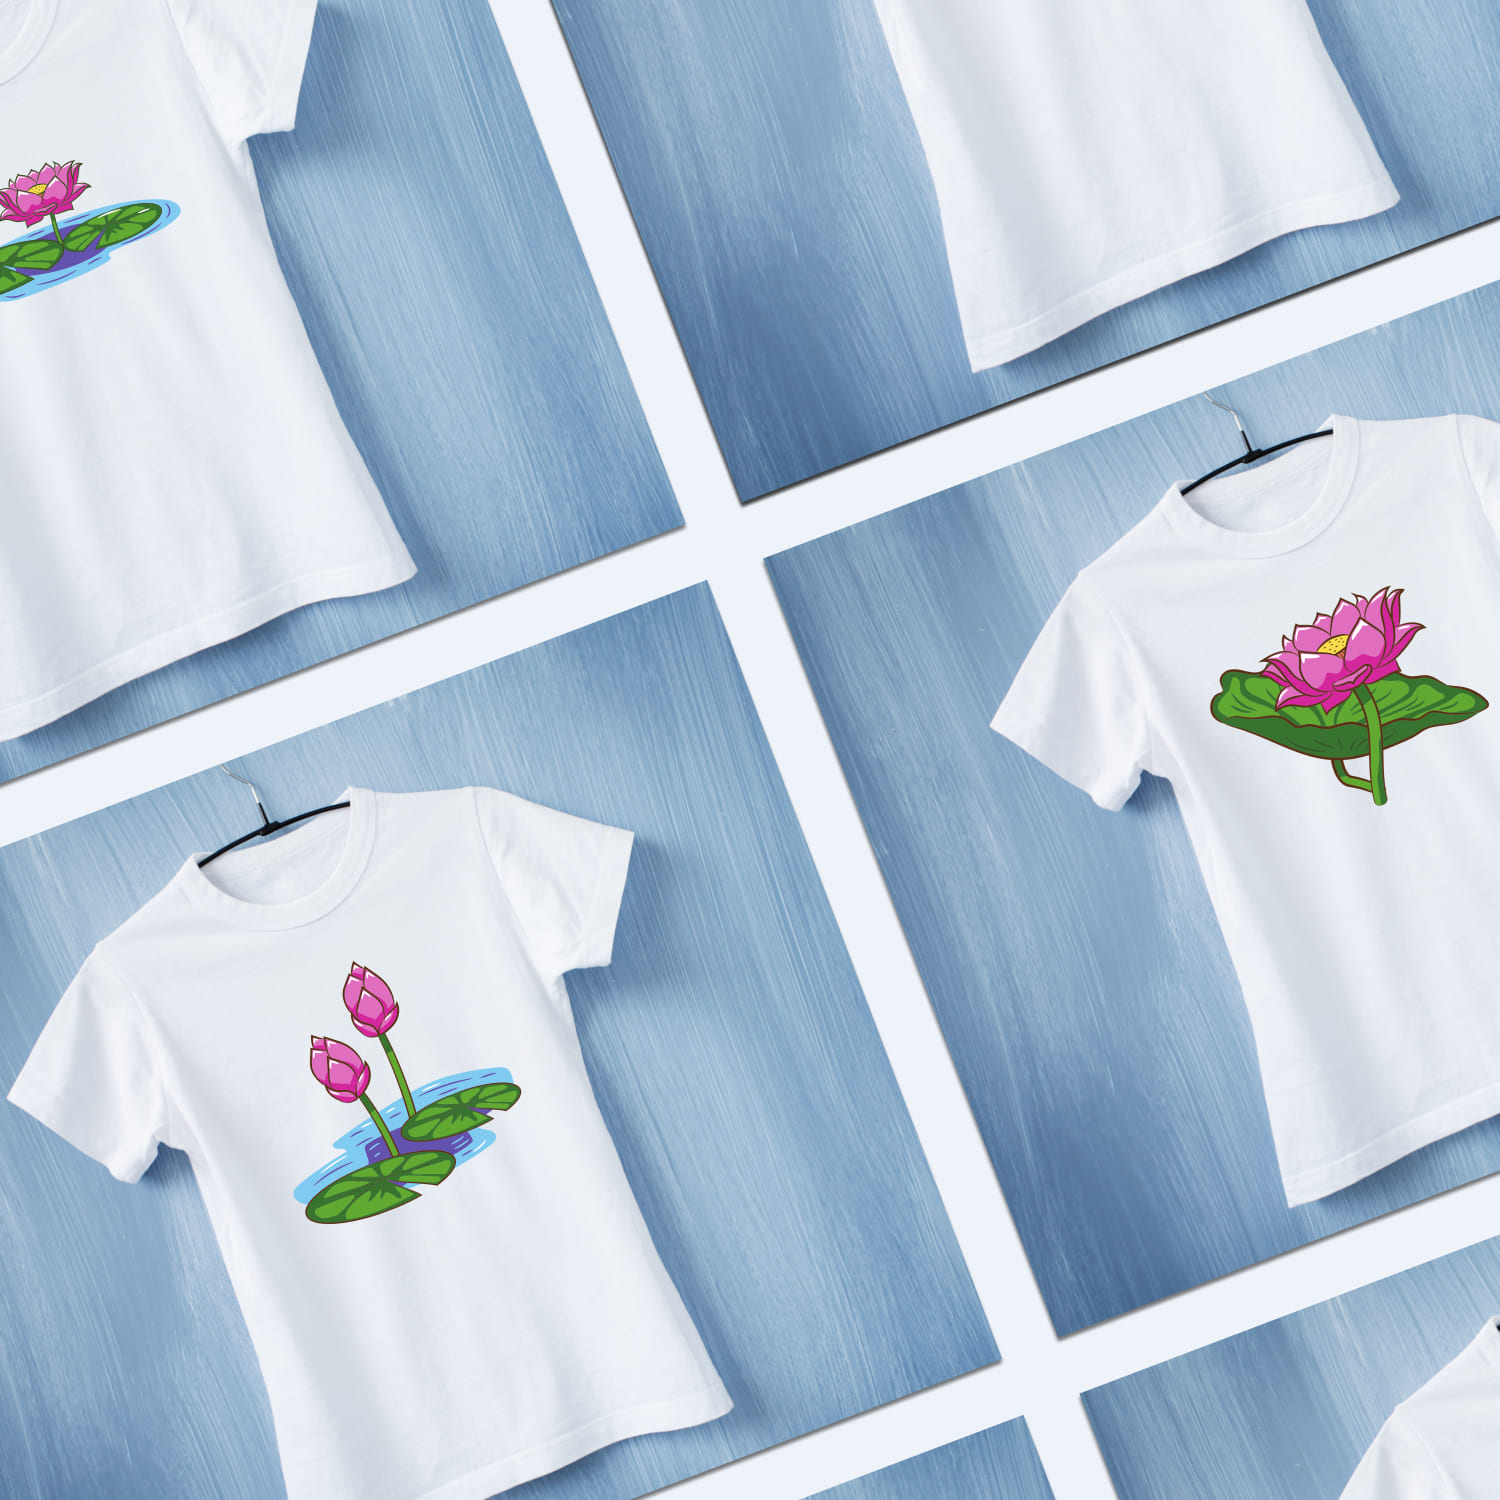 Lotus Flower T-shirt Designs Bundle cover.